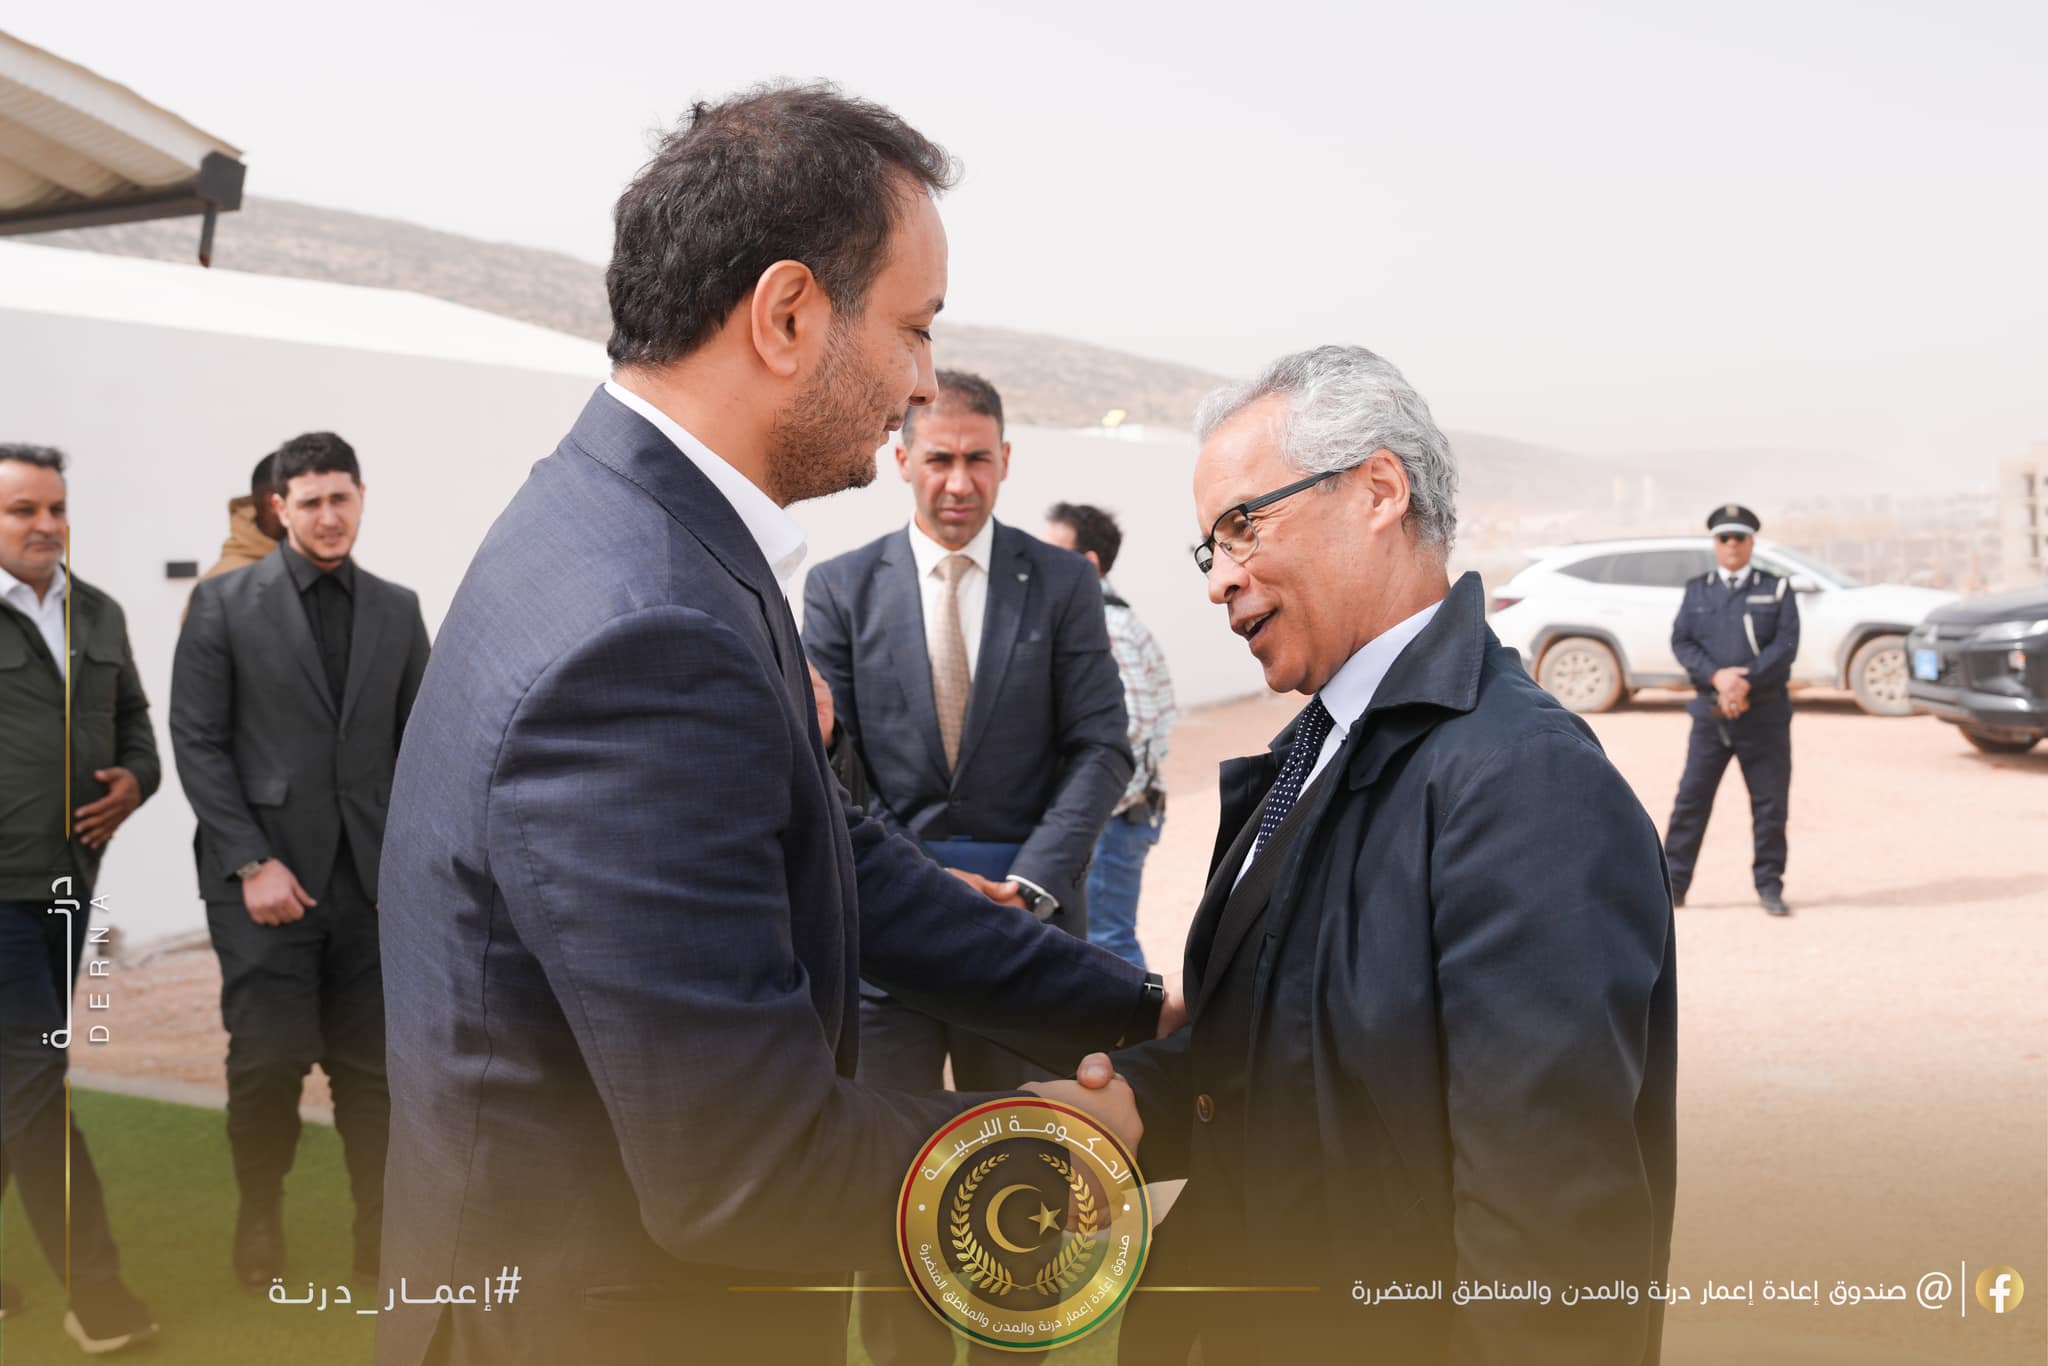 المدير العام لصندوق إعادة إعمار ليبيا يرحب برغبة فرنسا للمساهمة في إعادة إعمار مدينة درنة